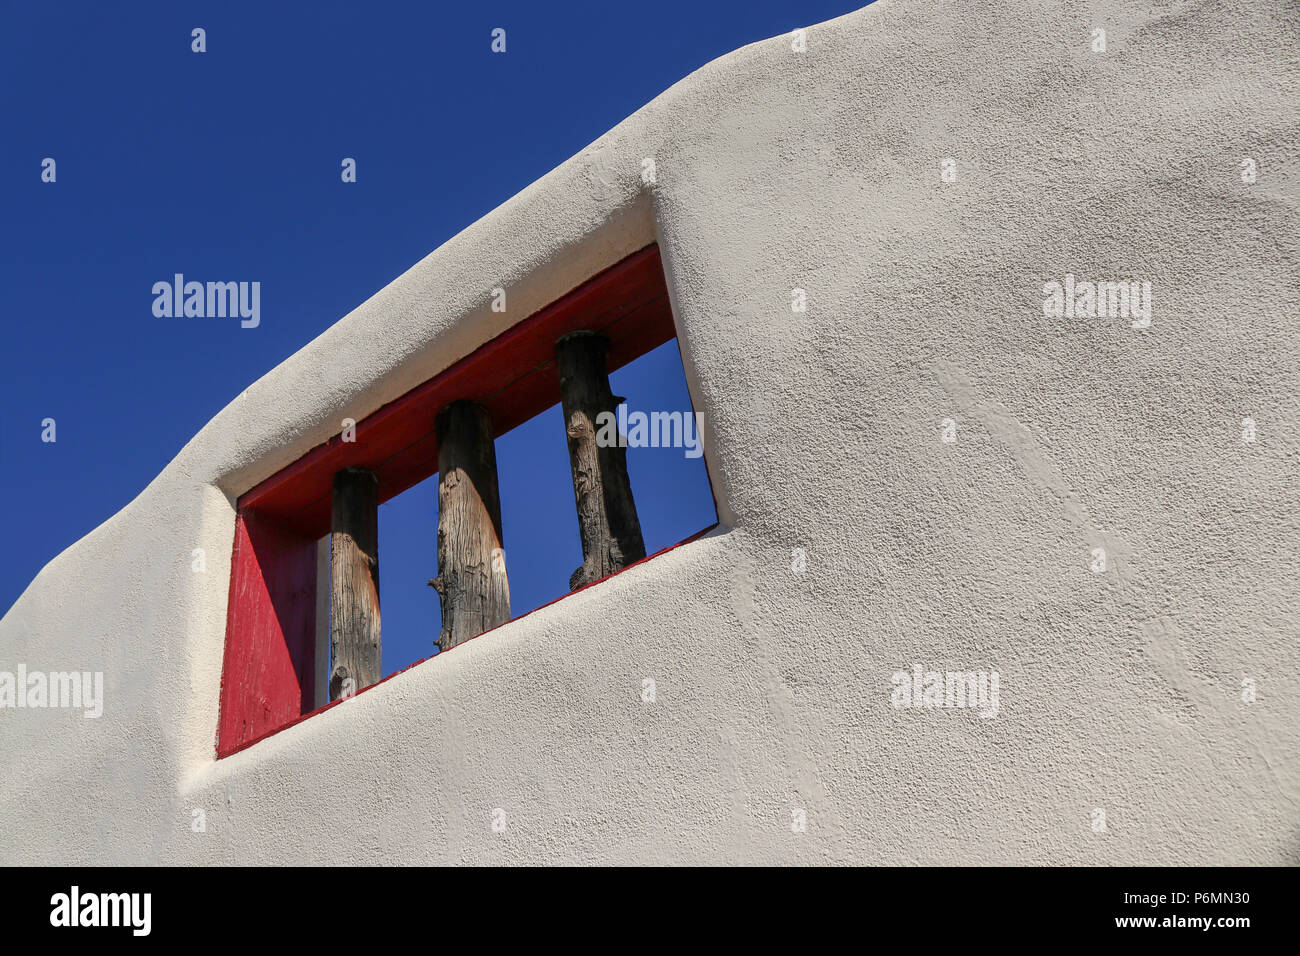 Dieses White adobe Mauer gegen den strahlend blauen Himmel ist ein schönes Foto von der Architektur in Albuquerque, New Mexico Stockfoto